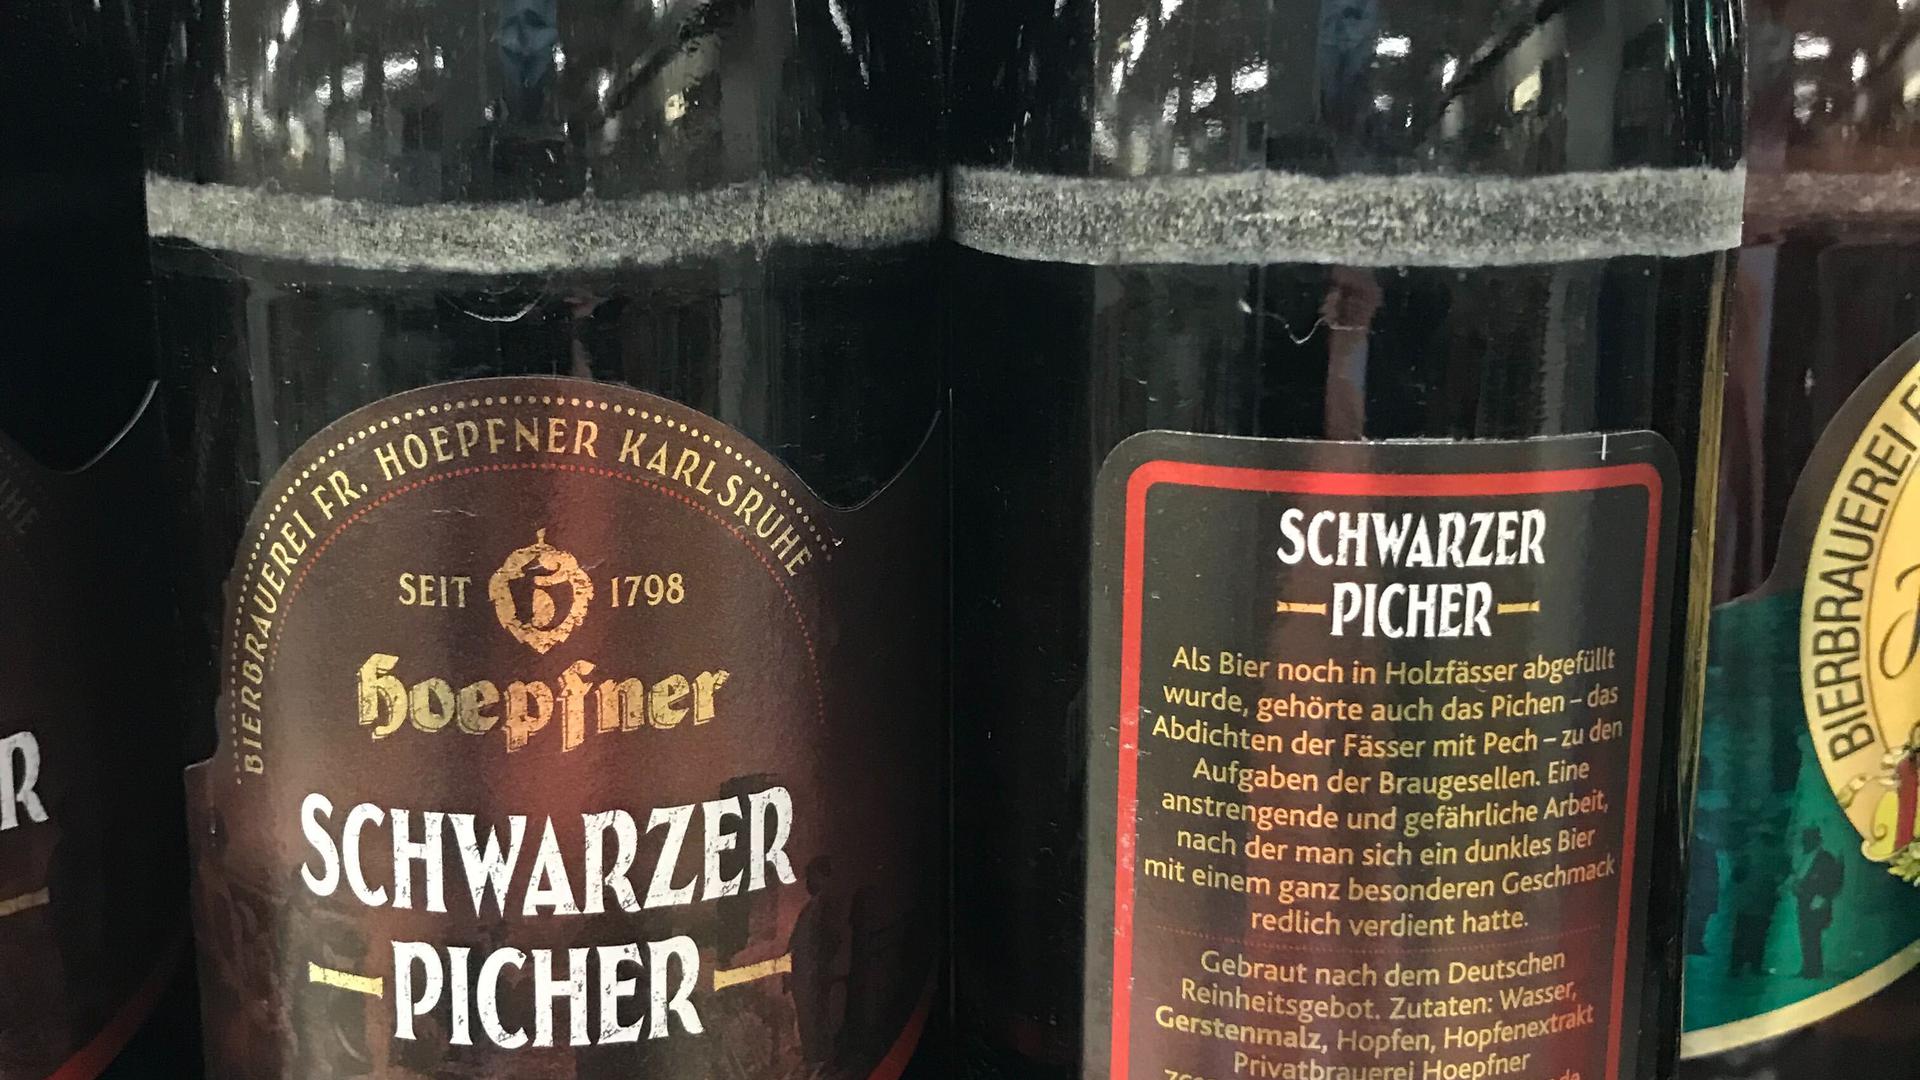 Flaschen der Sorte Schwarzer Picher stehen im Supermarktregal.